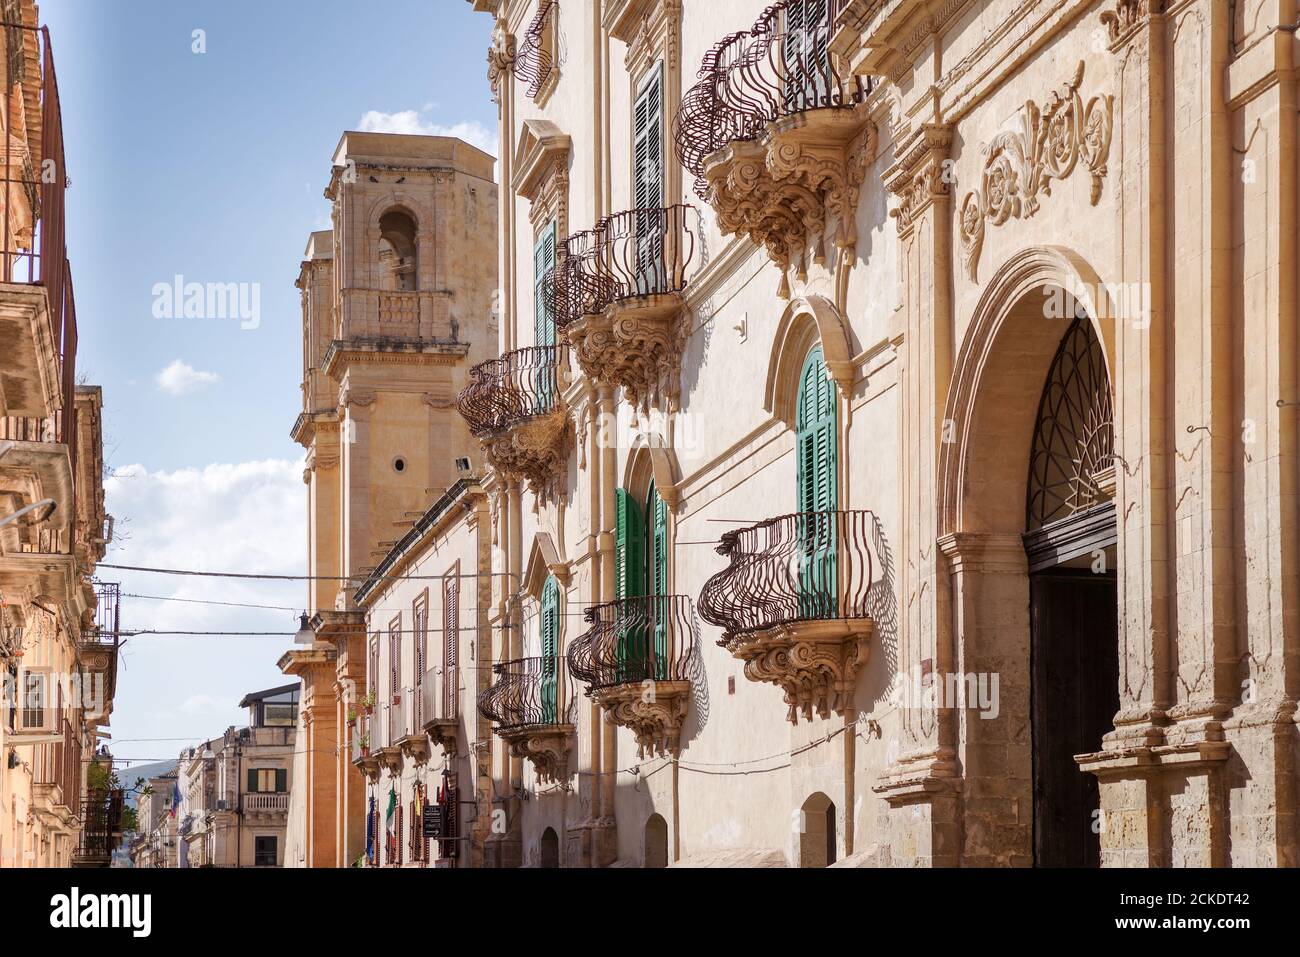 Hübsche Reihenhäuser mit mediterranen Stil Fensterläden und reich verzierten Balkonen in Noto - Sizilien, Italien Stockfoto